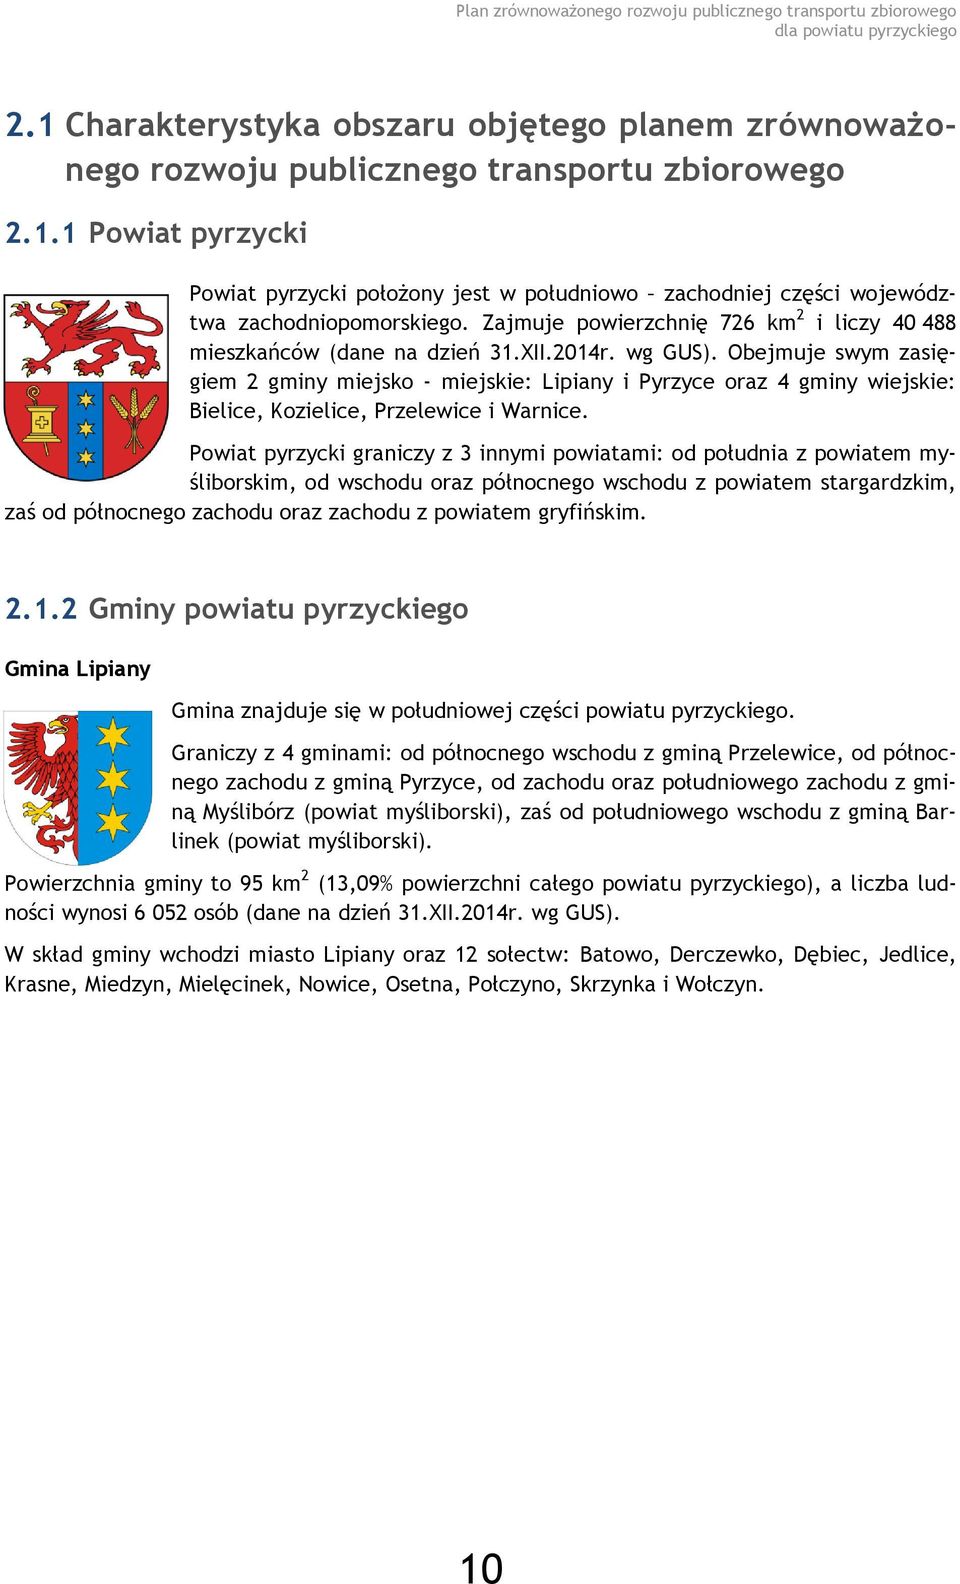 Obejmuje swym zasięgiem 2 gminy miejsko - miejskie: Lipiany i Pyrzyce oraz 4 gminy wiejskie: Bielice, Kozielice, Przelewice i Warnice.